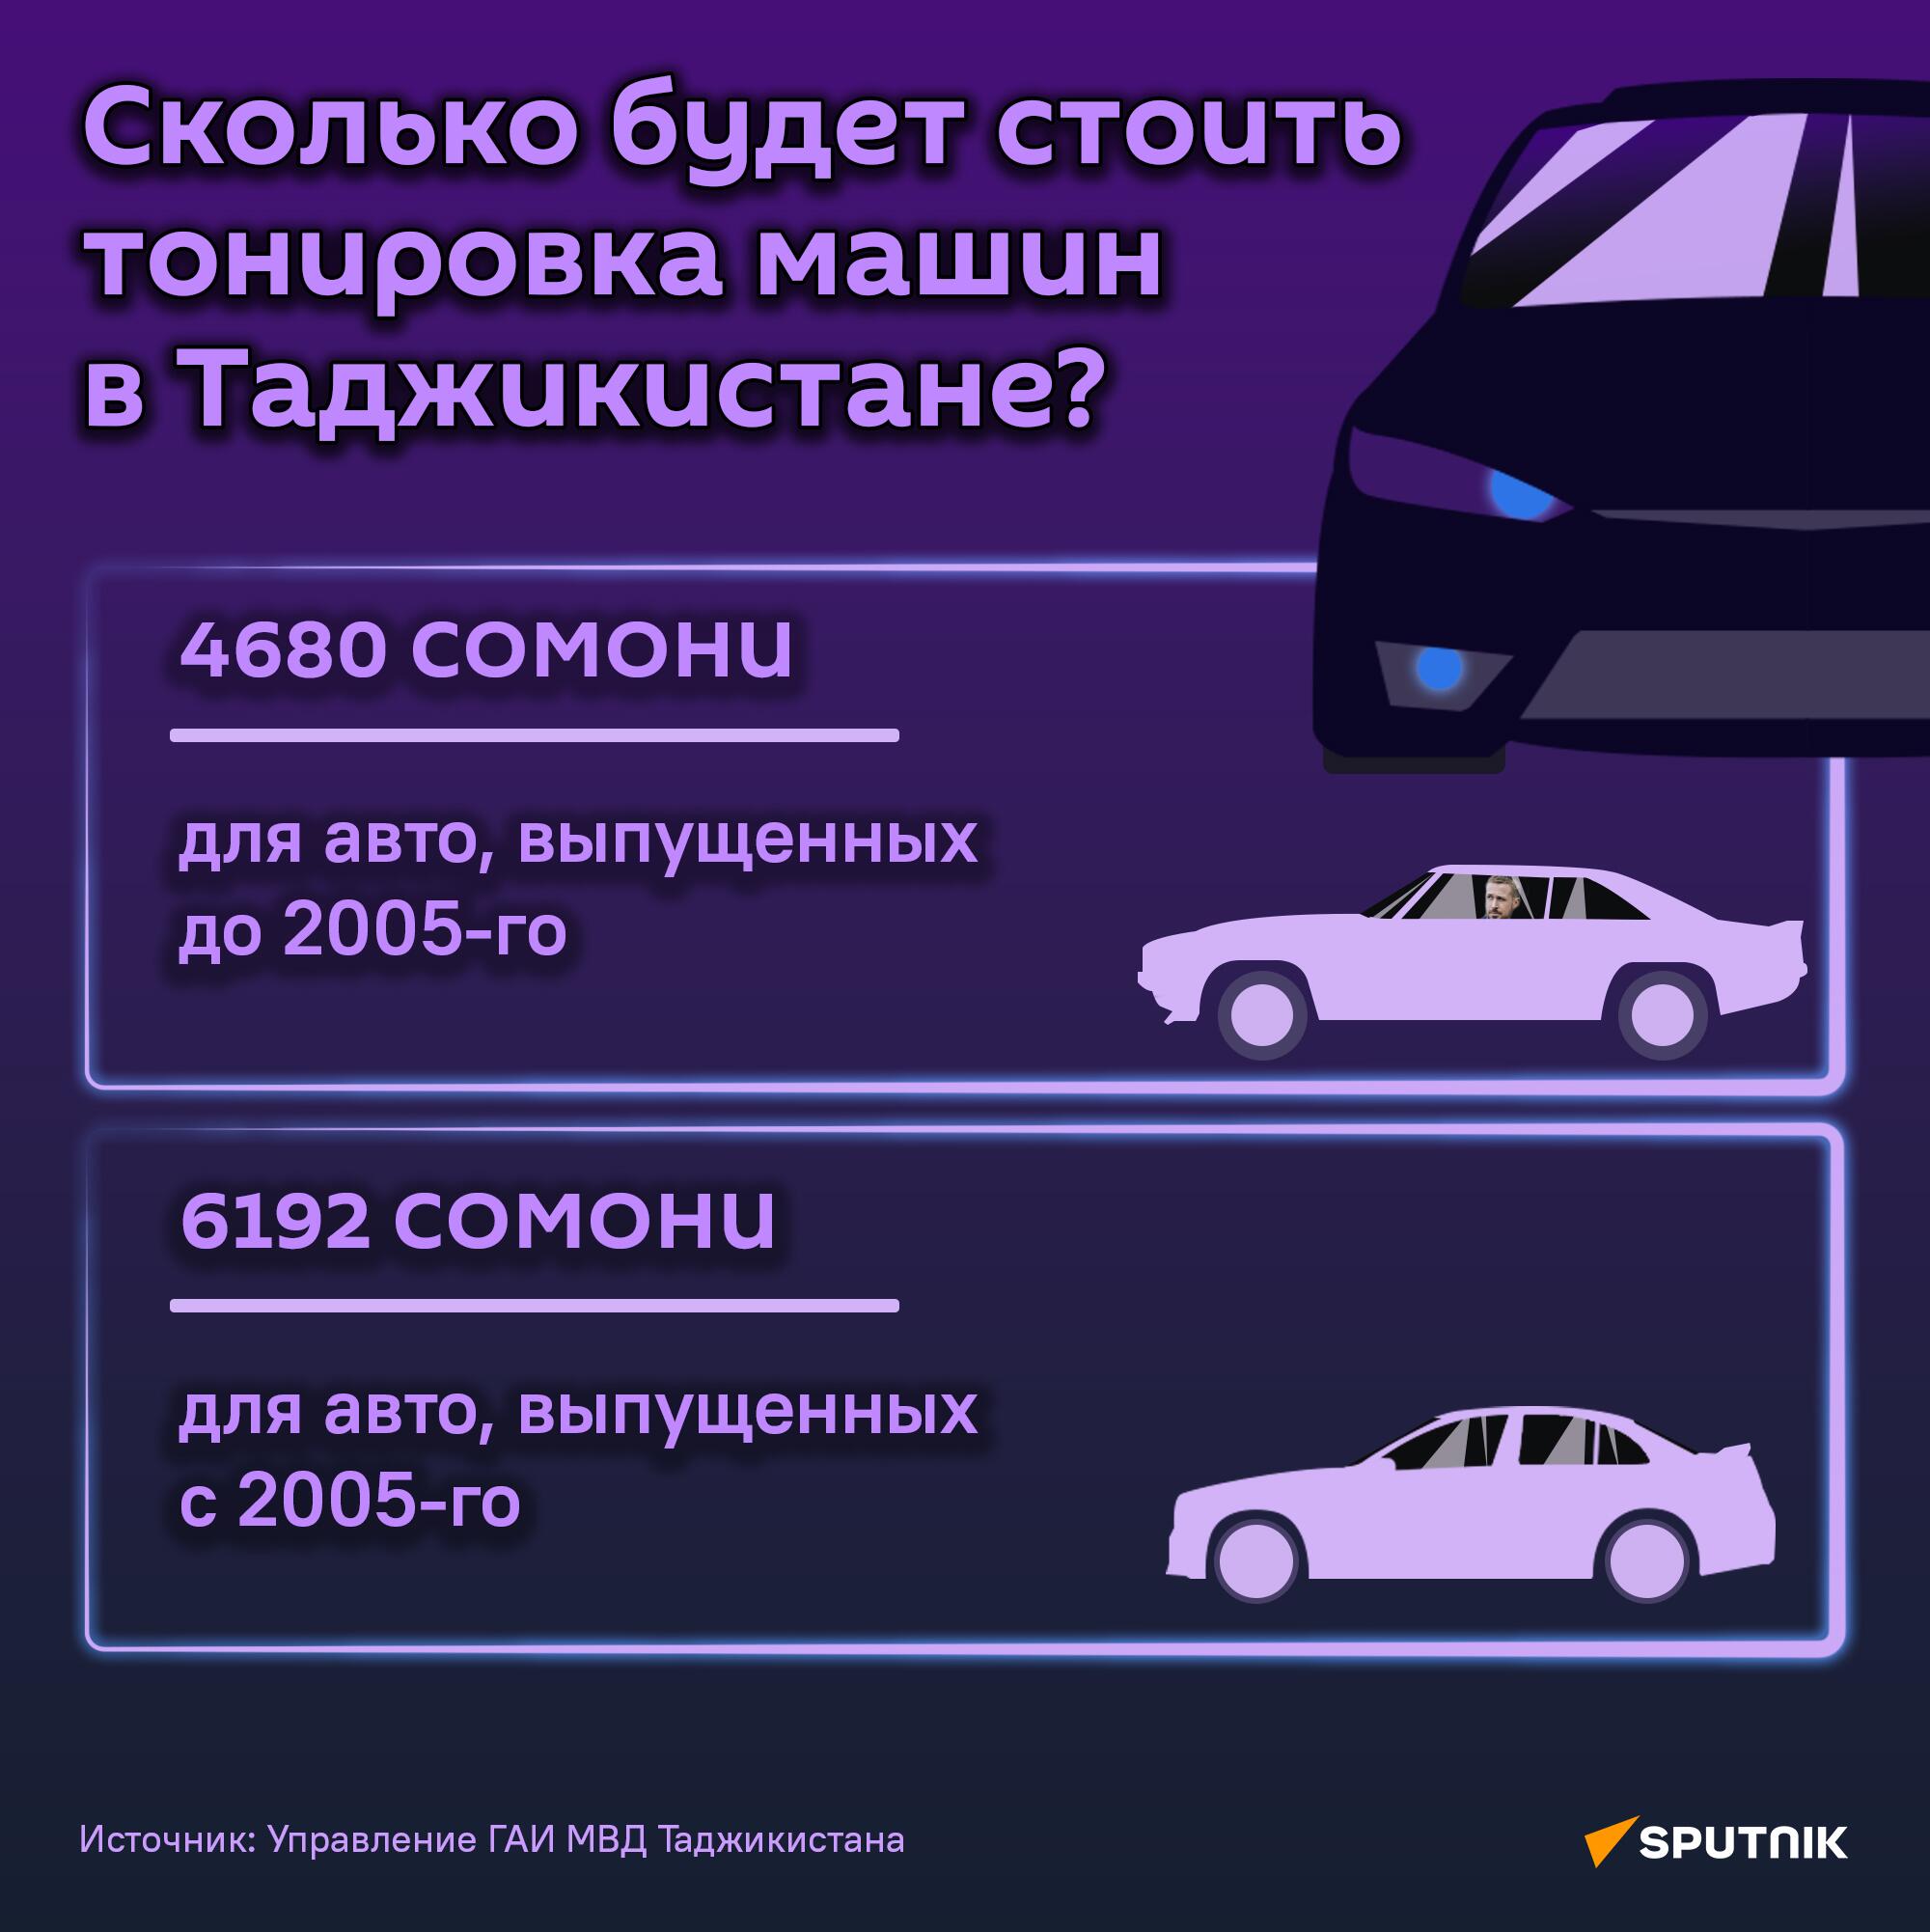 Сколько будет стоить тонировка машин в Таджикистане? - Sputnik Таджикистан